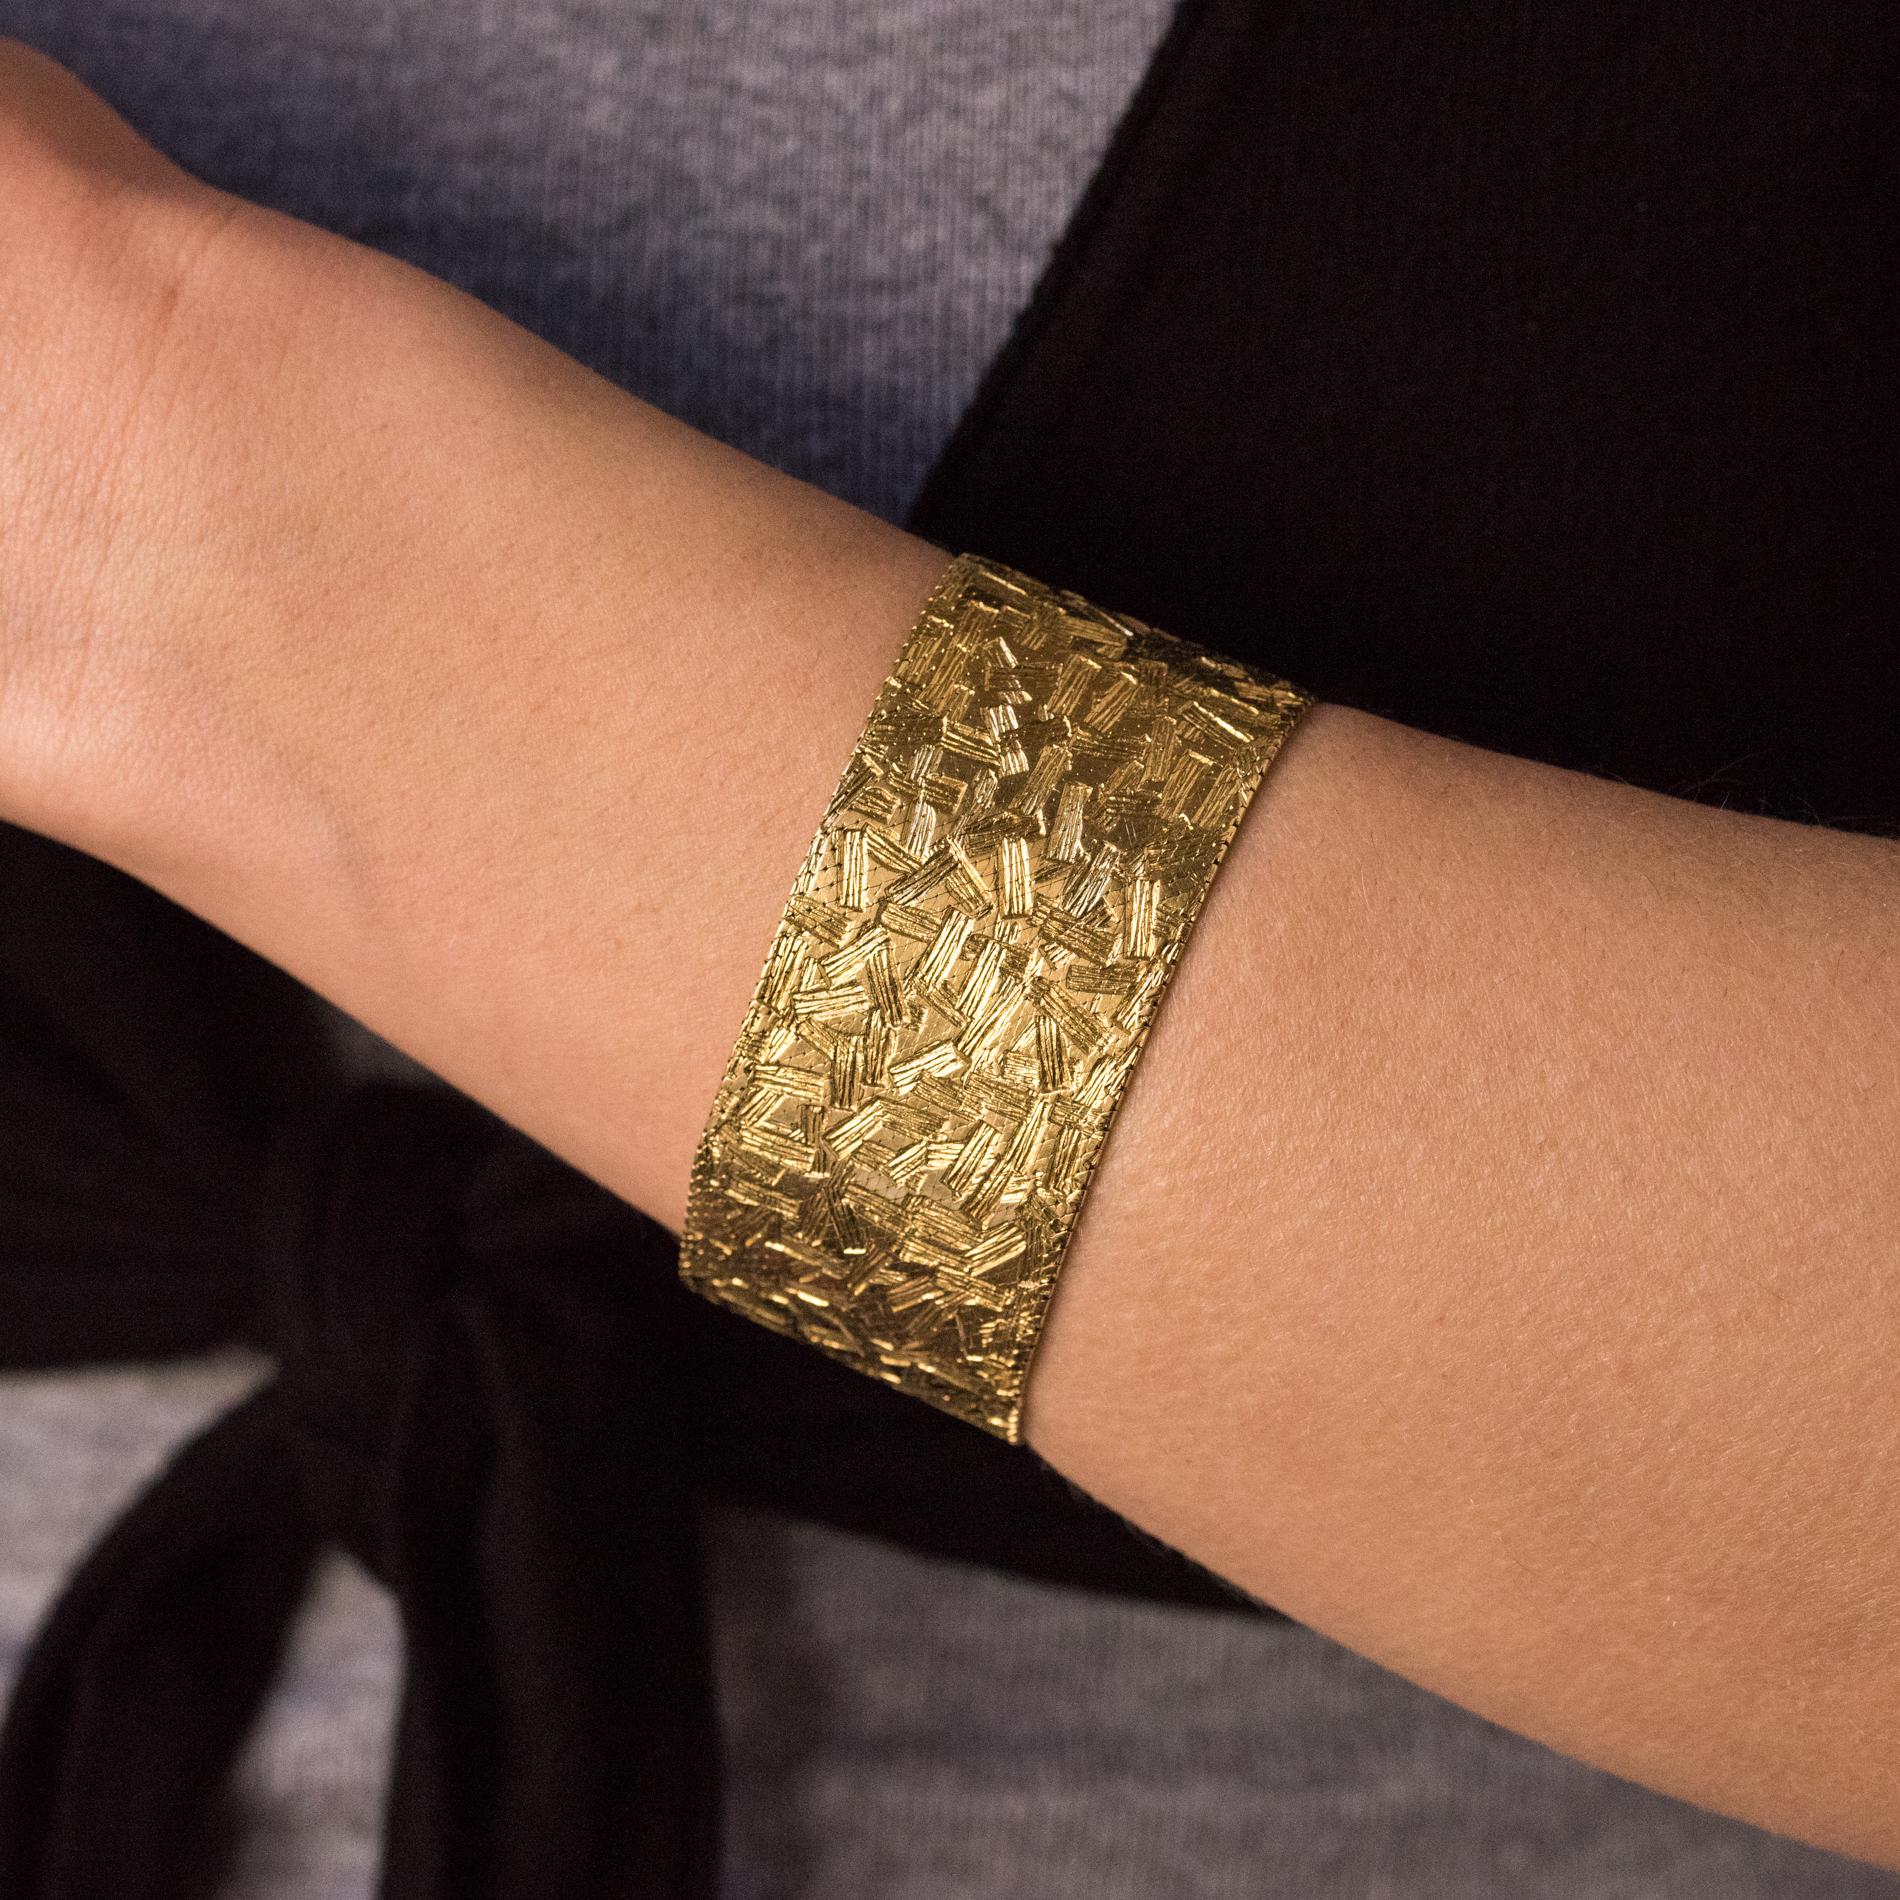 Armband aus 18 Karat Gelb- und Weißgold, mit Rüsselpunze.
Dieses schöne Retro-Armband ist aus einem gemusterten Mailänder Stoffgeflecht gefertigt. Der Verschluss ist ein Ratschenverschluss mit 2 Sicherheits-